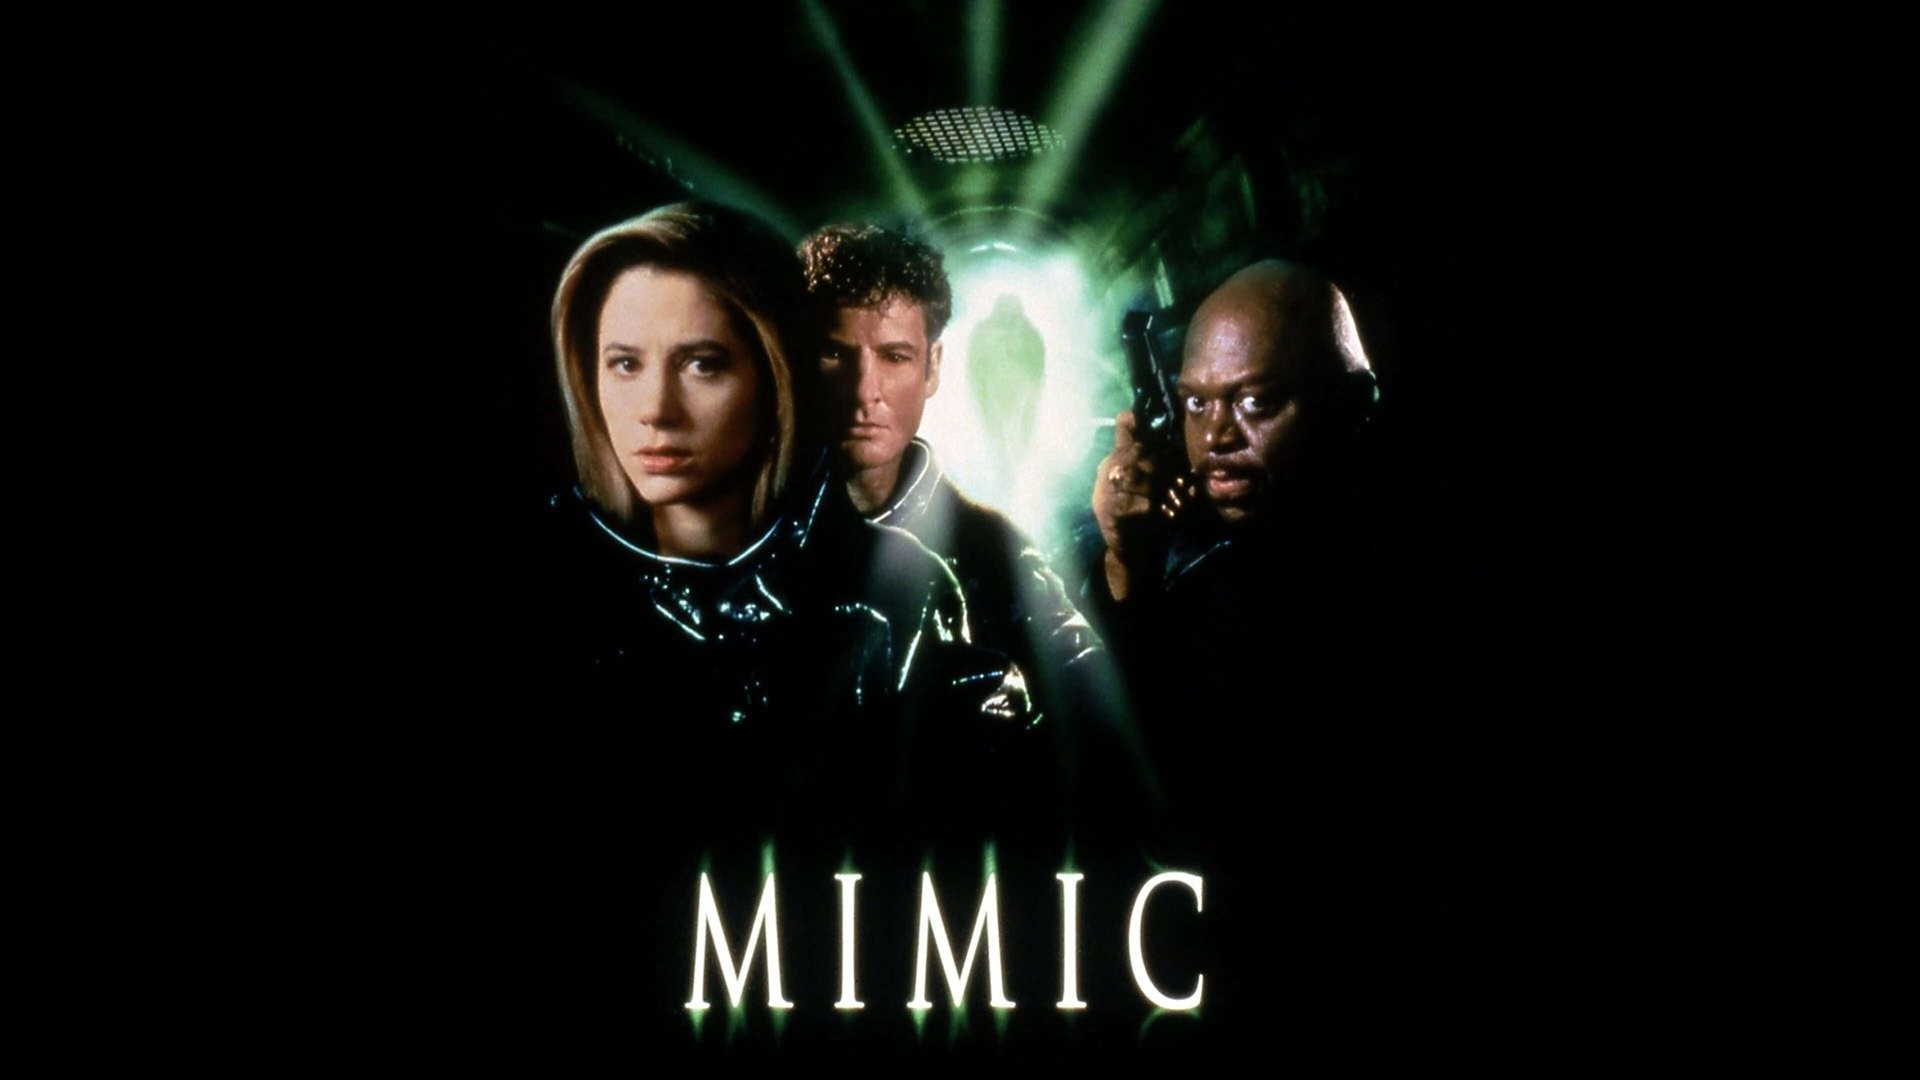 The Mimic (2020 film) - Wikipedia